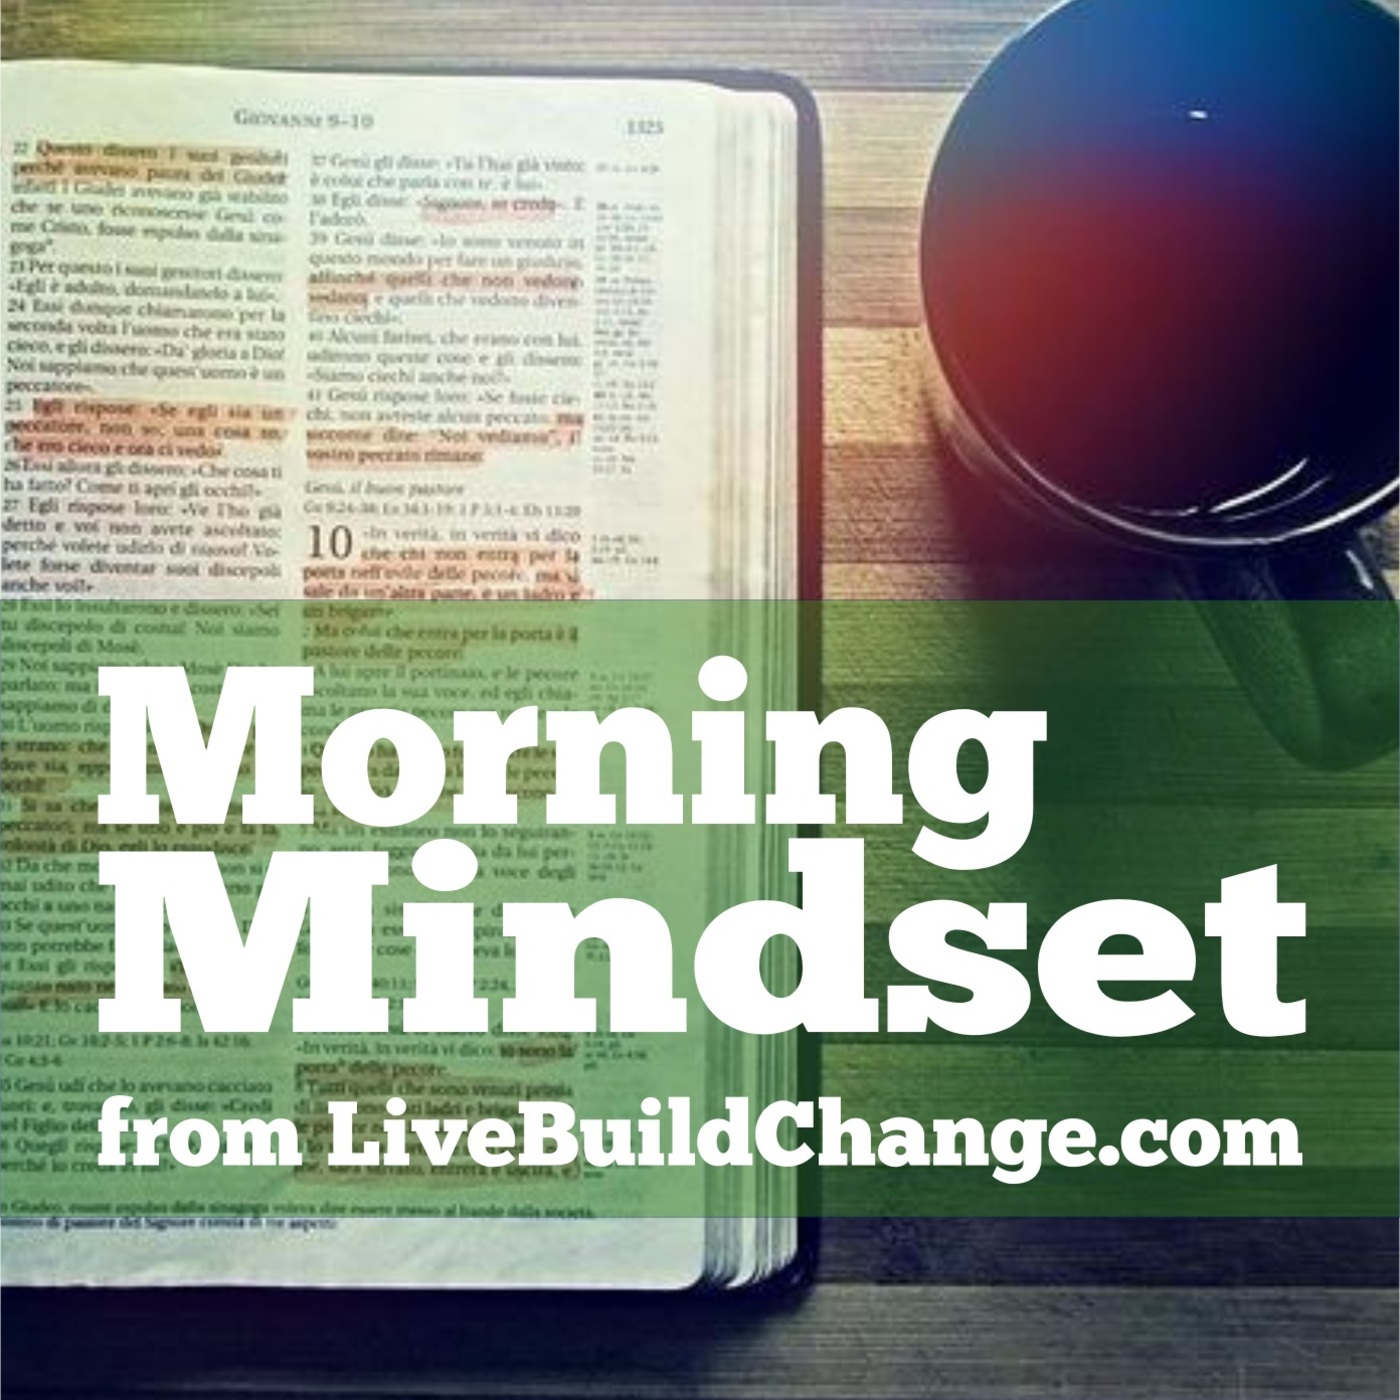 November 7 Morning Mindset from Live Build Change